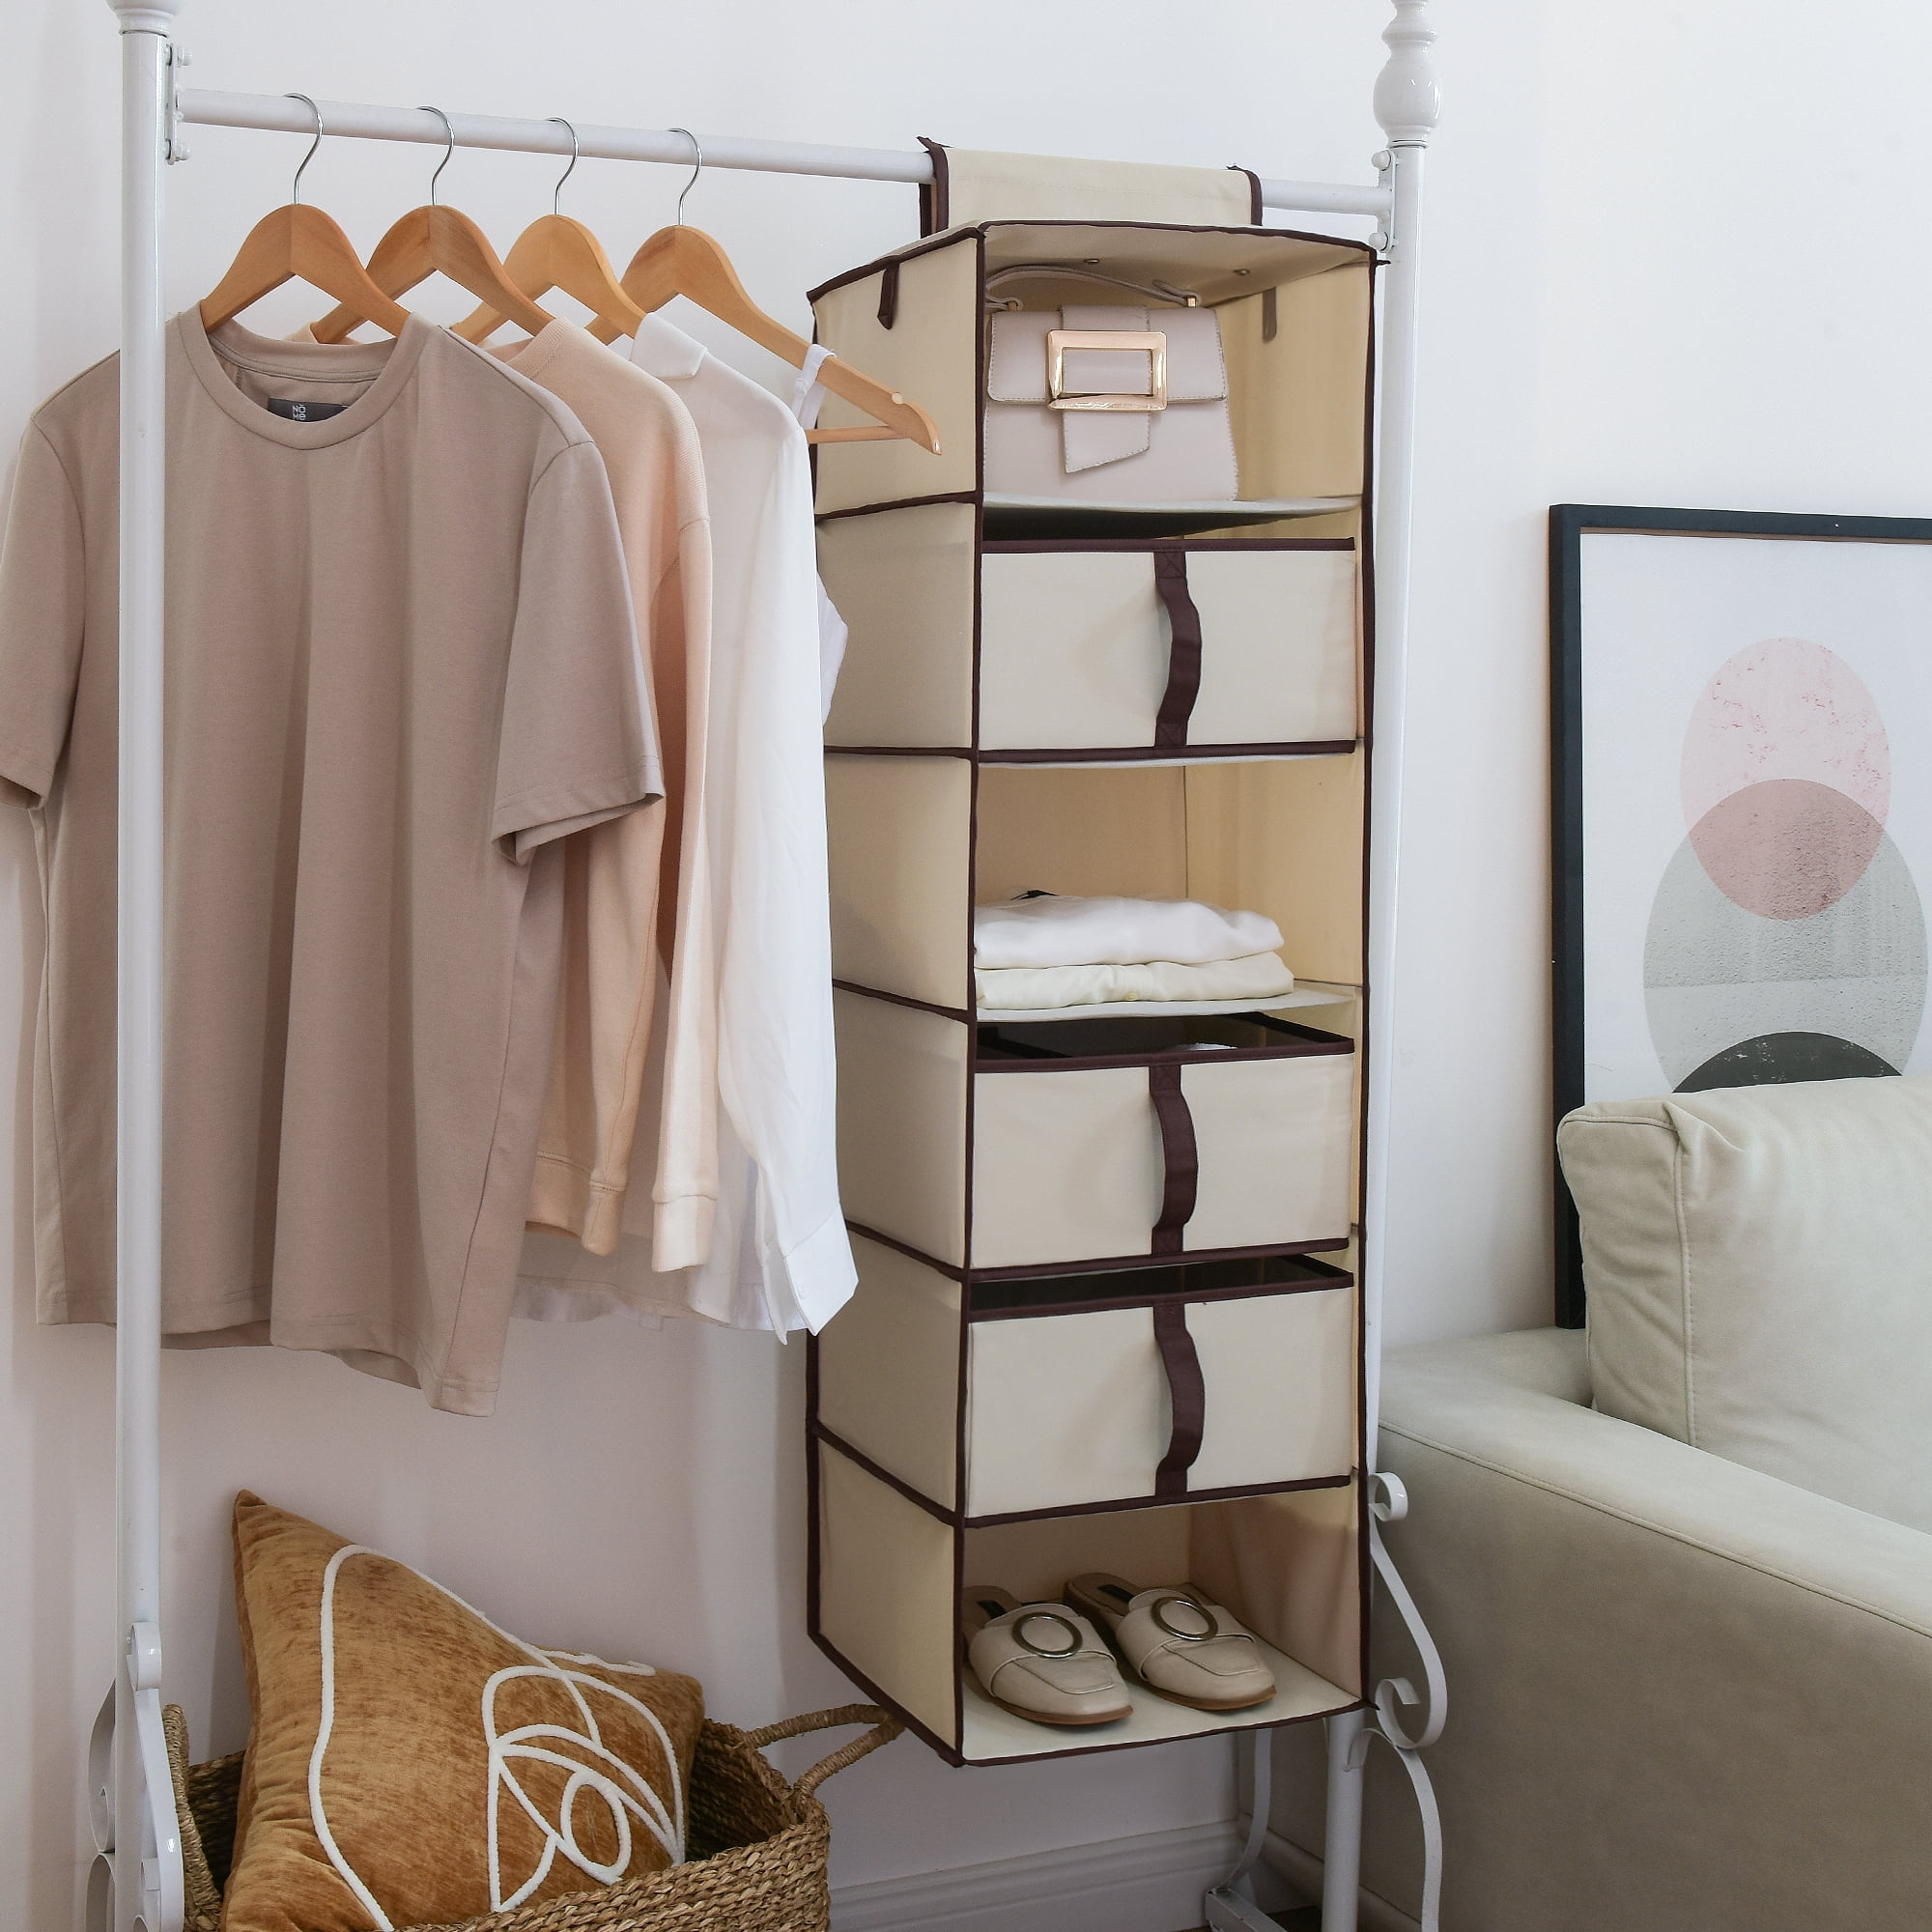 SMIRLY Hanging Closet Organizer Shelves Grey 6 Shelf Closet Storage High-Quality